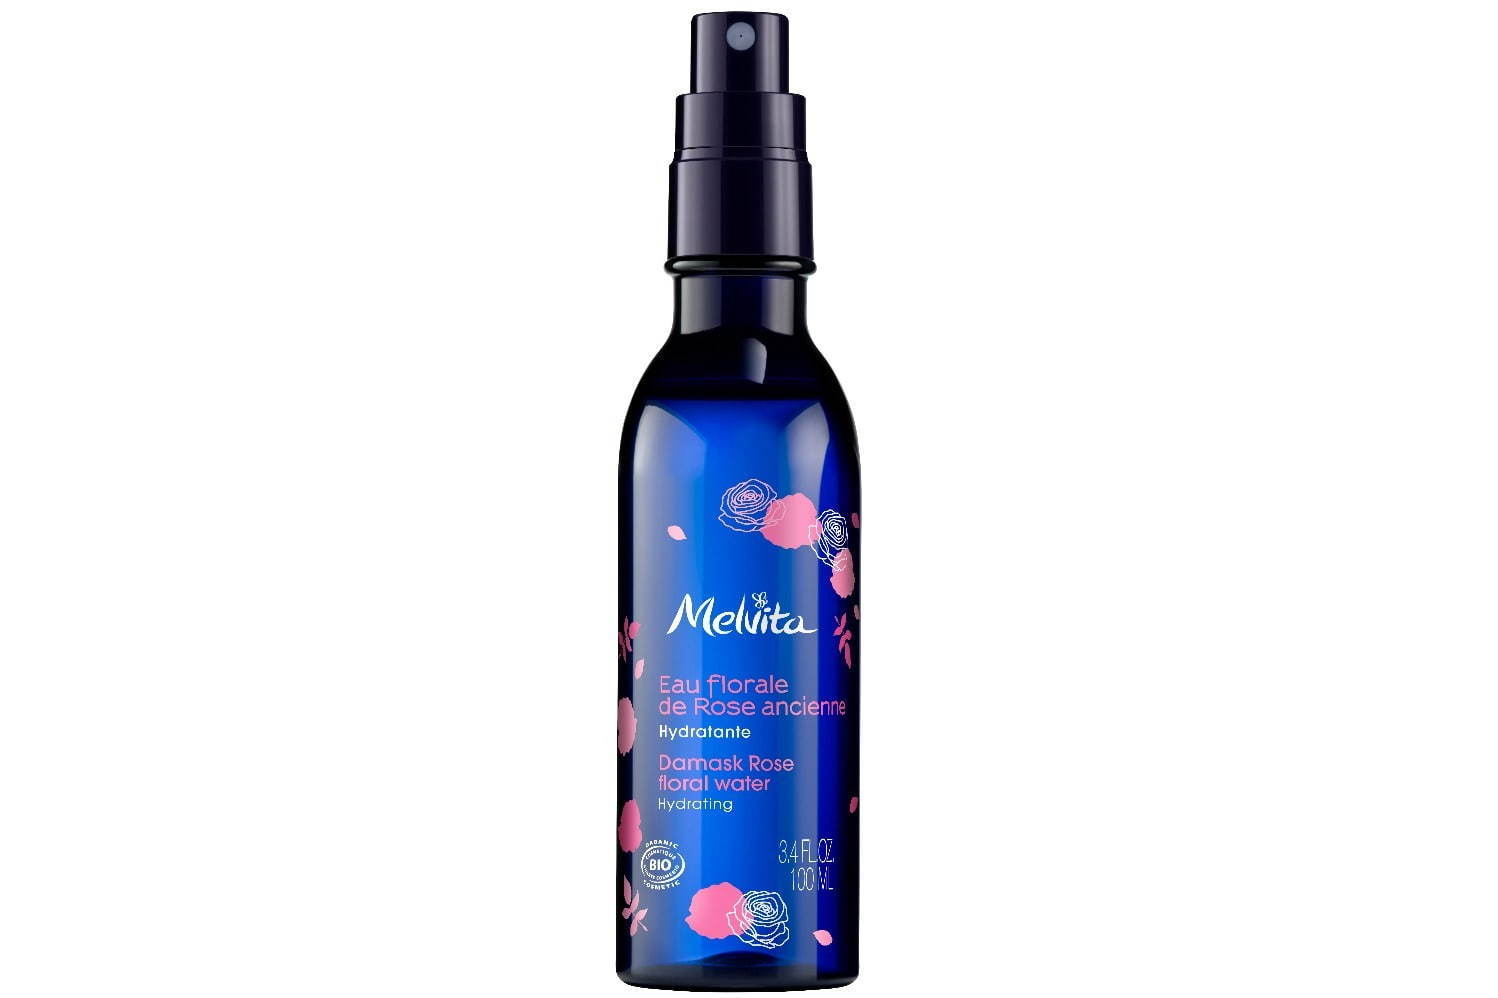 メルヴィータ“太陽の香り”のマルチオイルやローズの香りのミスト化粧水 ファッションプレス